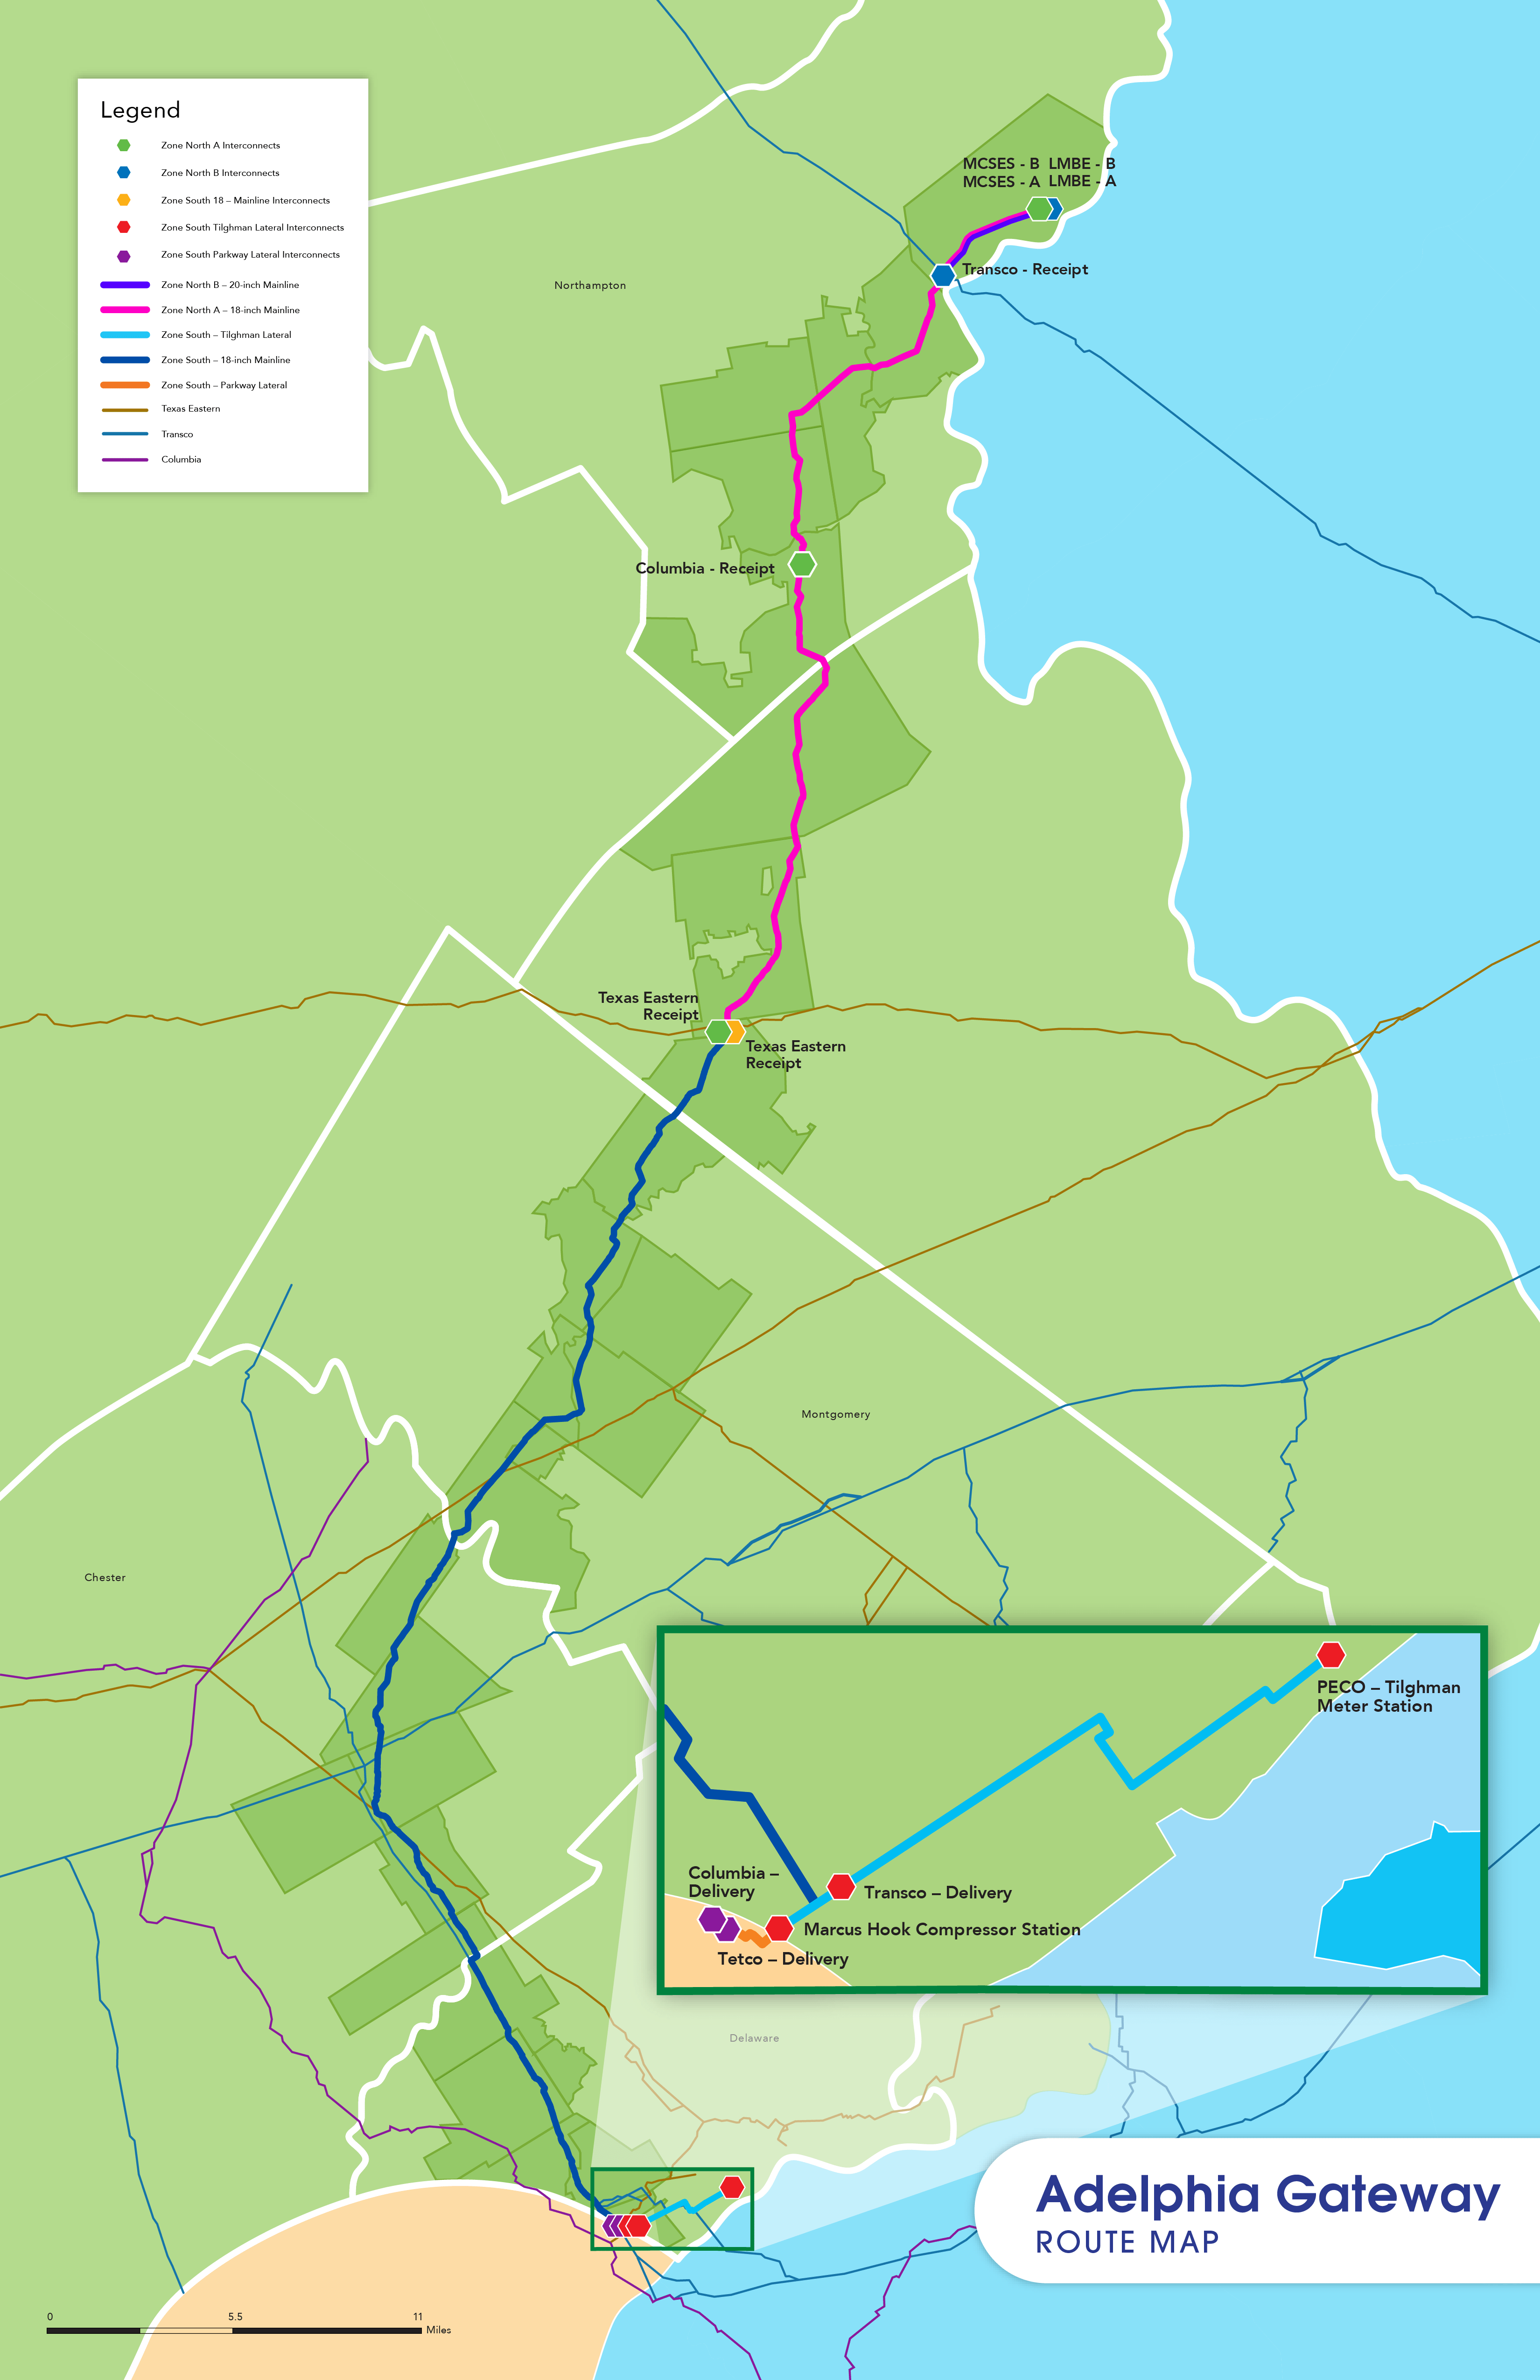 Adelphia Gateway Route Map